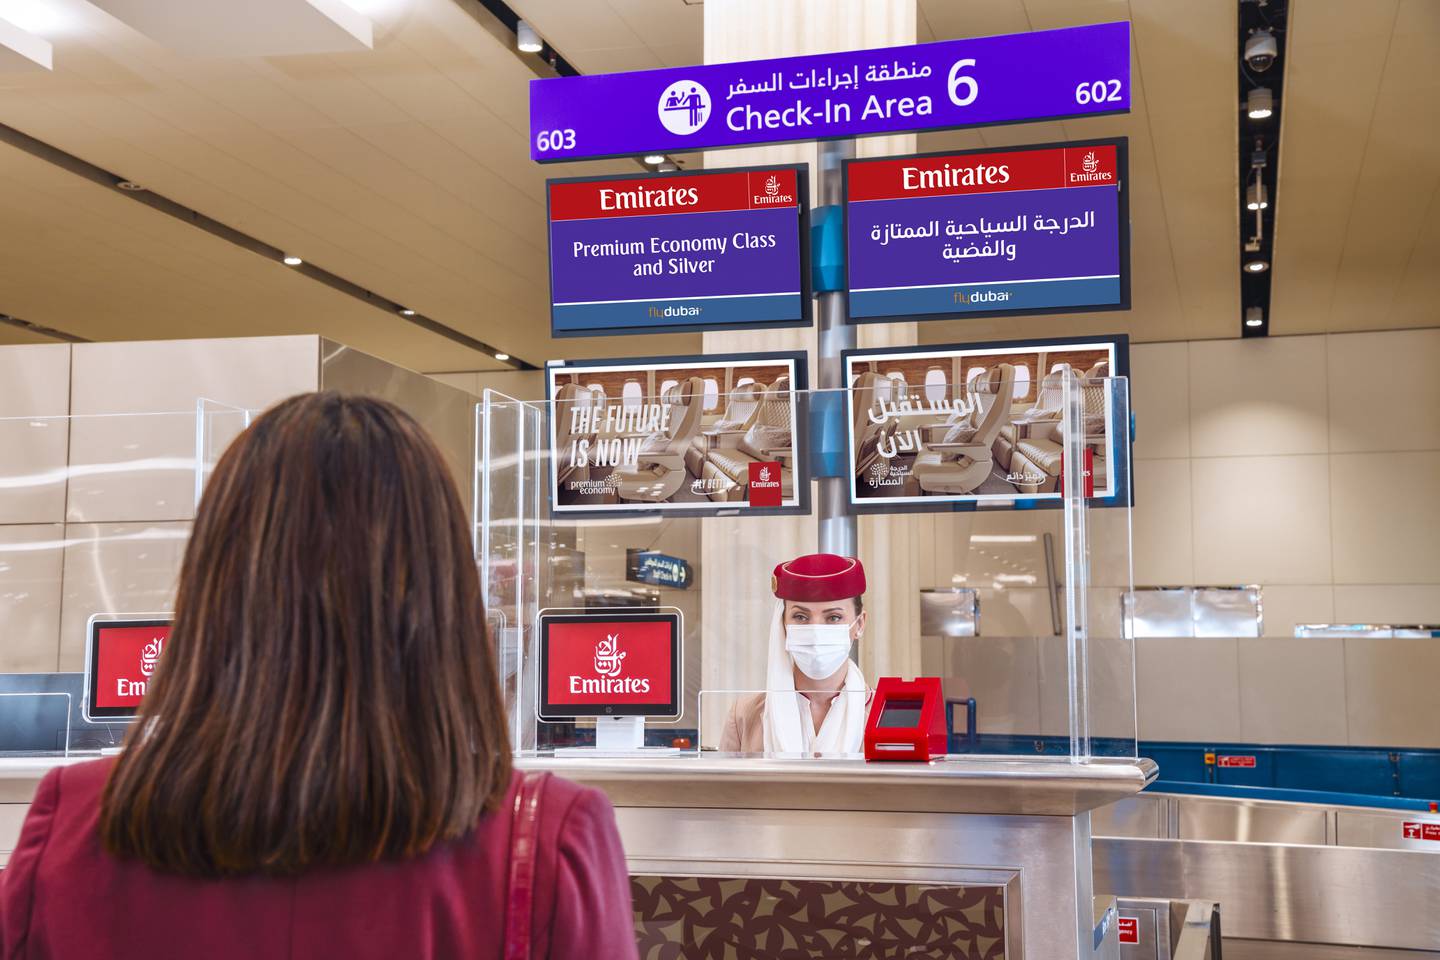 Les voyageurs devront présenter une preuve de rétablissement ou de vaccination avant d'embarquer sur des vols à destination de la Thaïlande, les compagnies aériennes étant chargées de s'assurer qu'ils disposent des bons documents.  Photo: Emirates